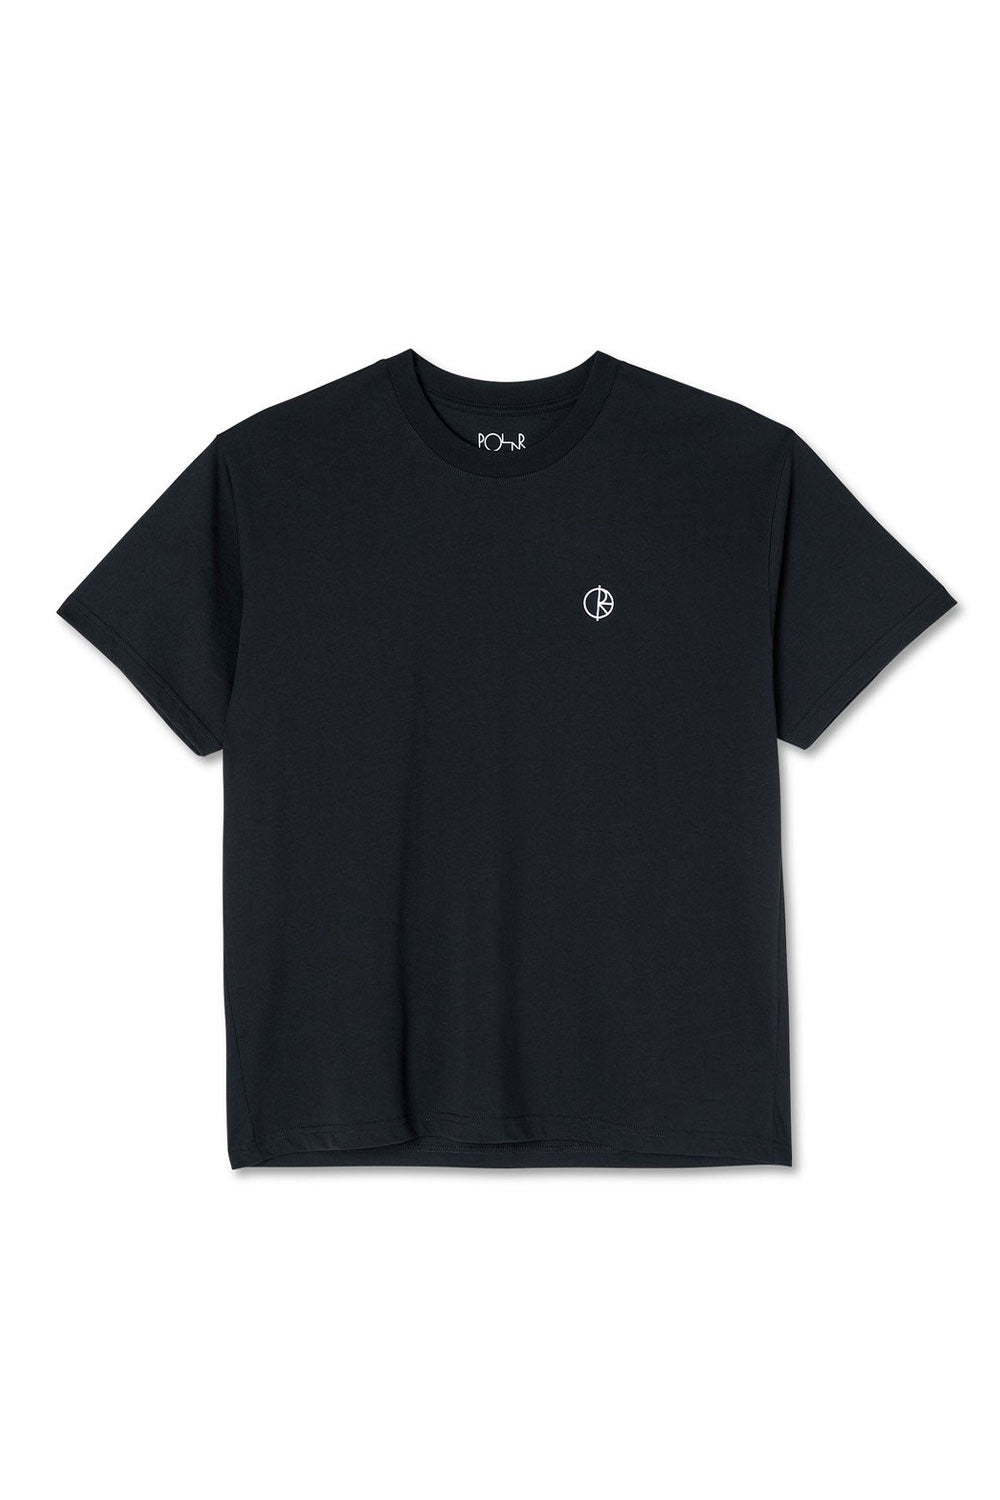 Shop Polar Skate Co | Polar Skate Co Team T-Shirt - Black